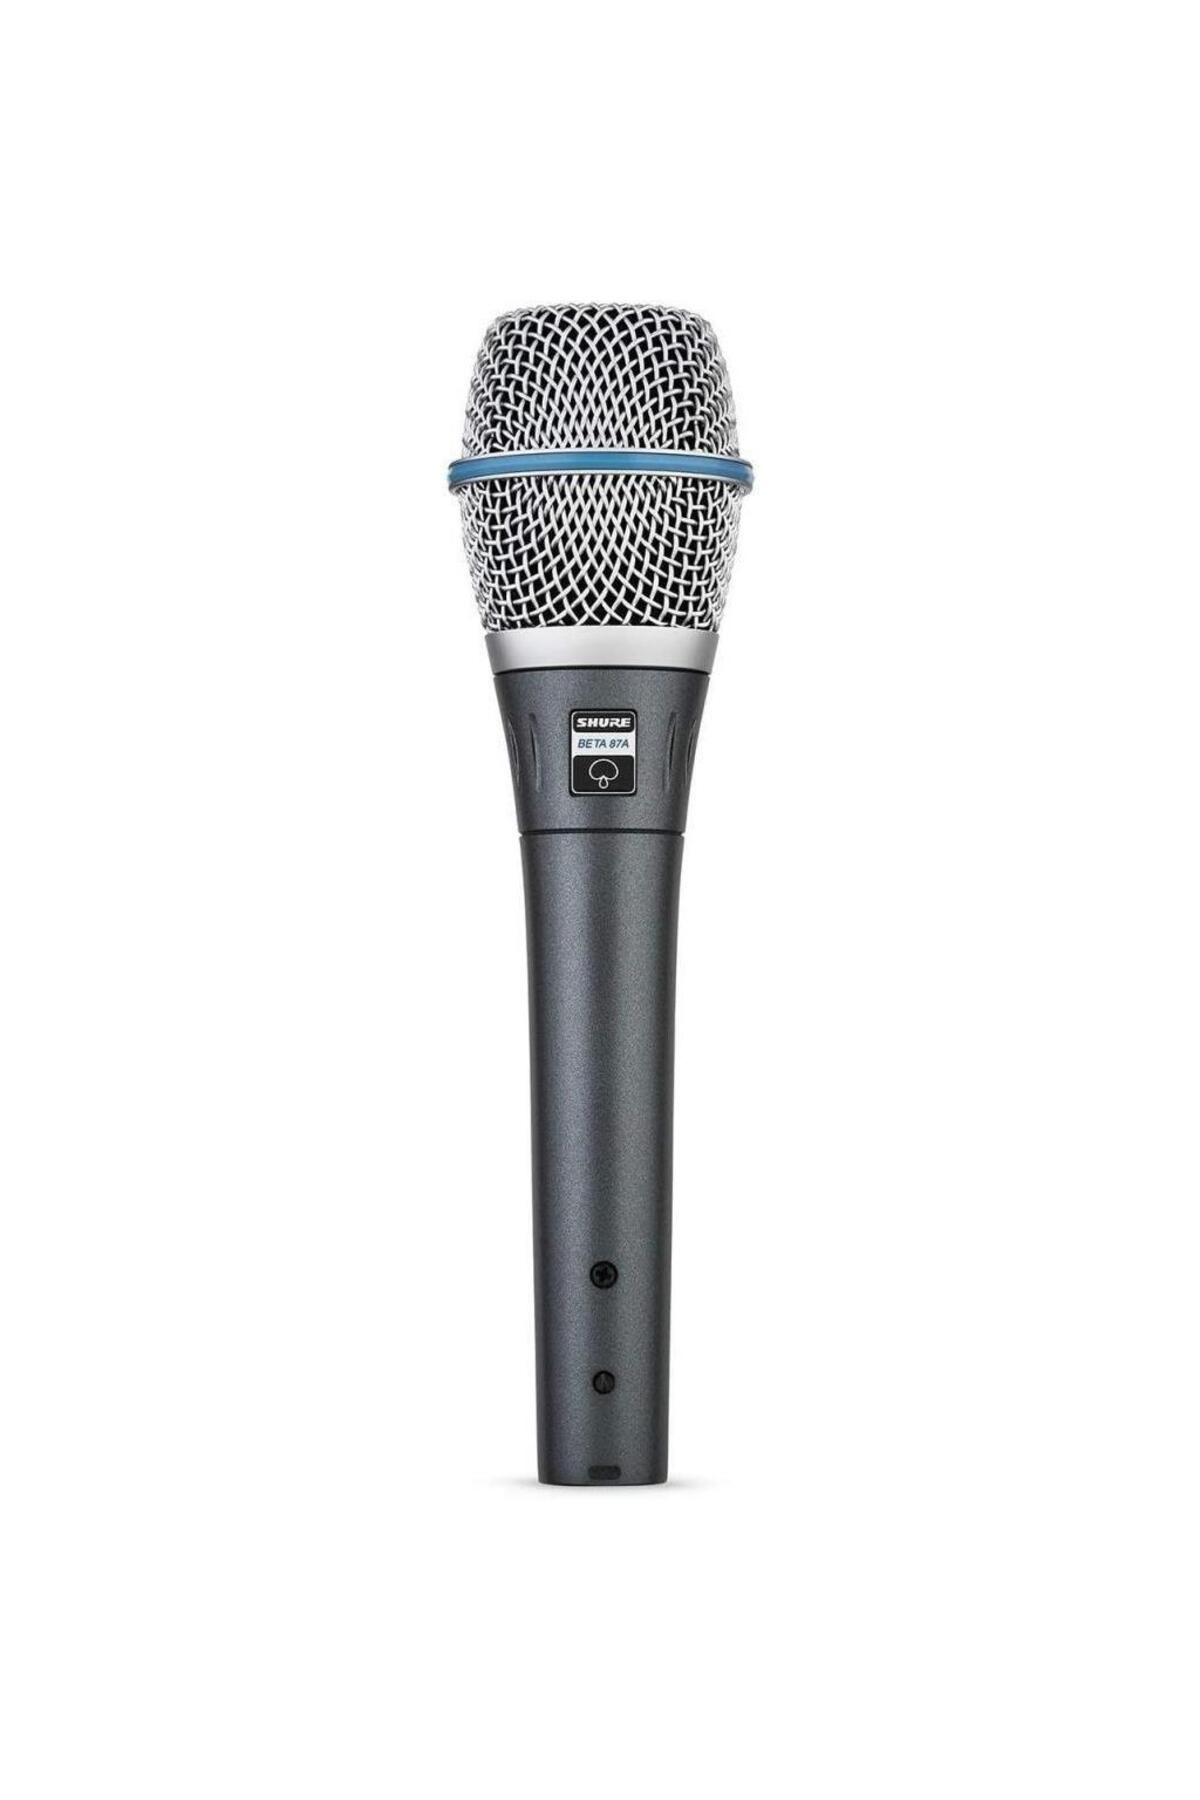 Shure Beta 87a Condenser Vokal Mikrofon